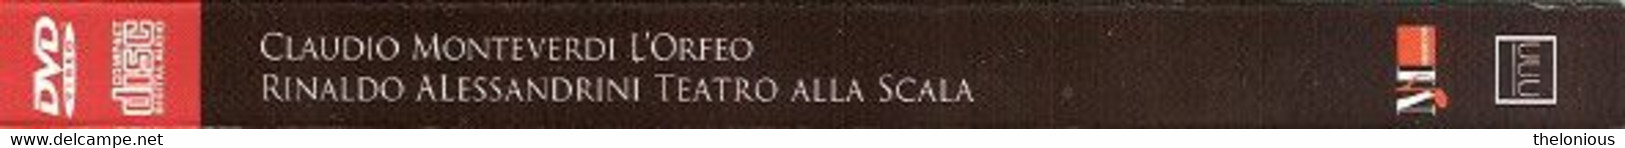 # Claudio Monteverdi - L'Orfeo - Teatro Alla Scala (DVD + CD) - Concerto E Musica